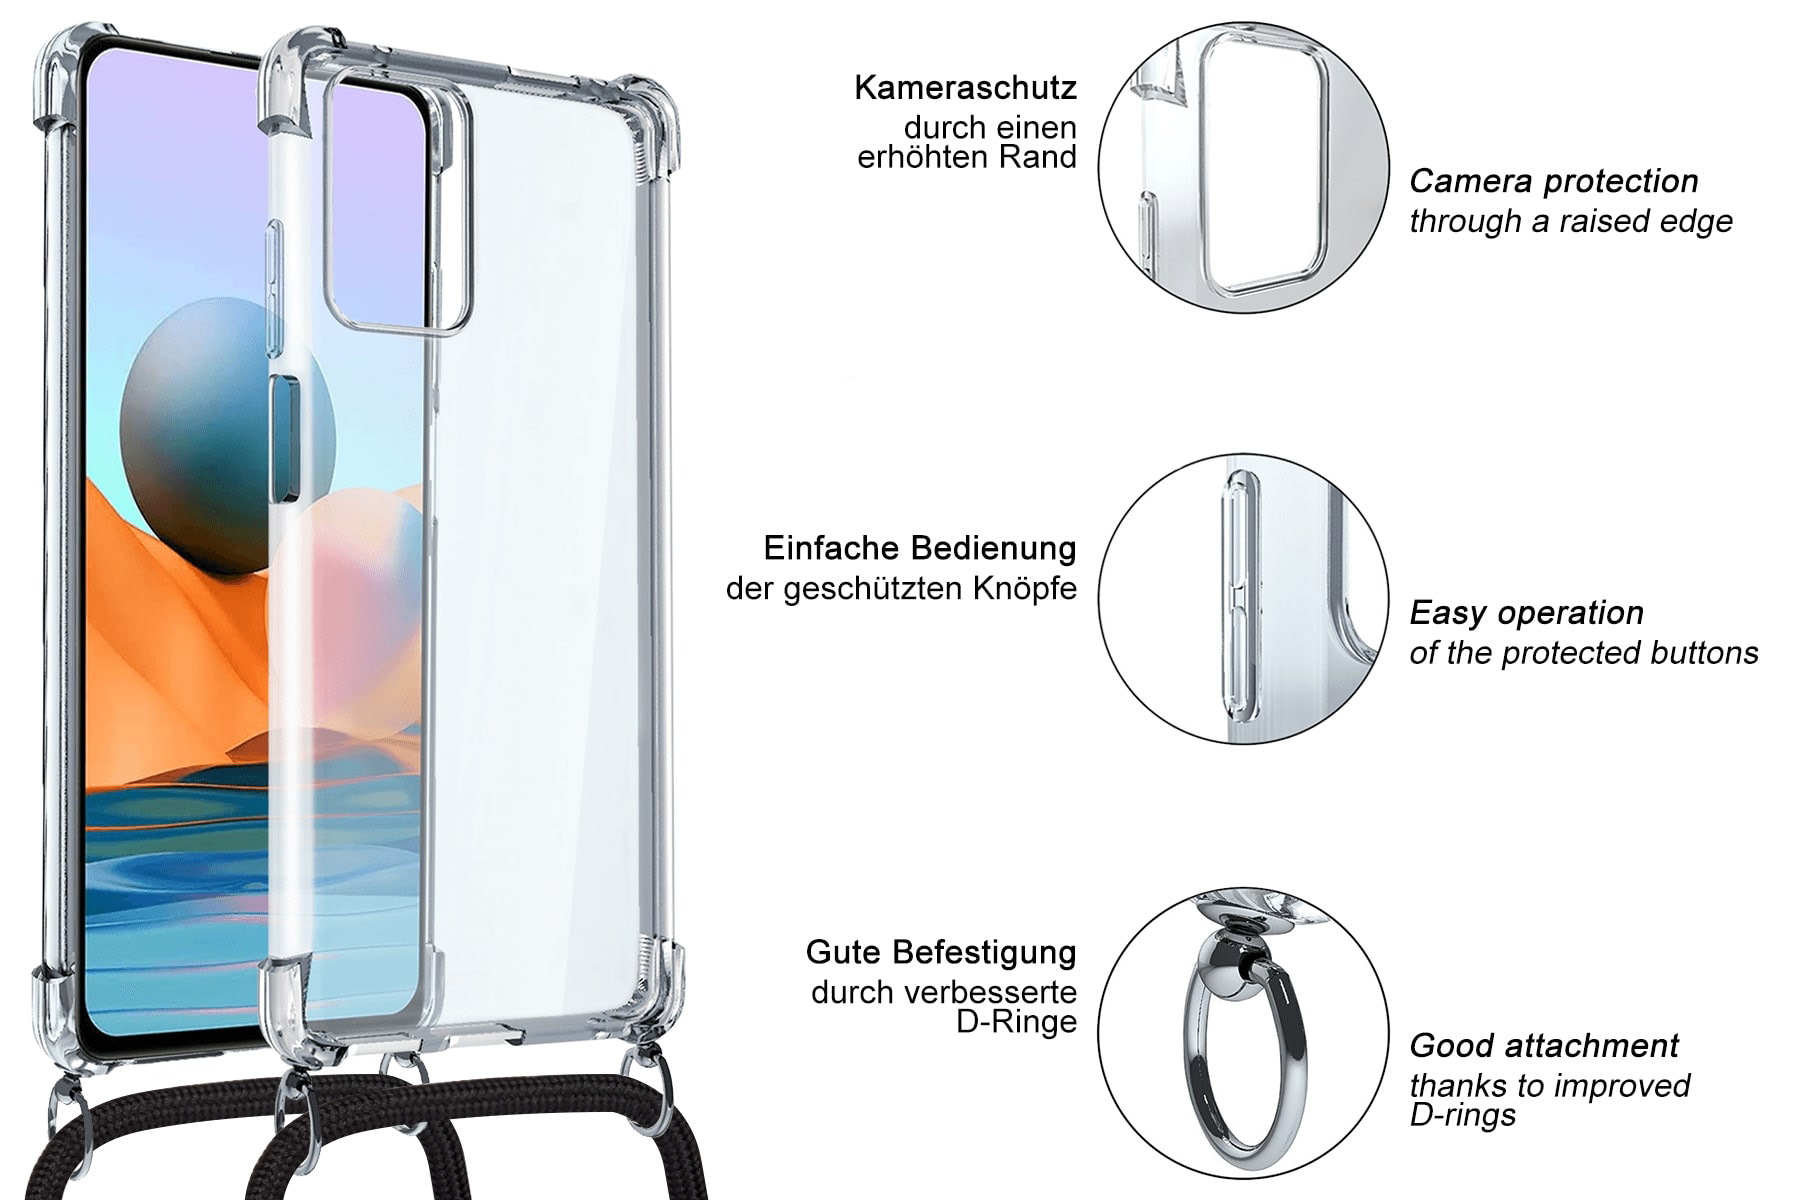 MTB MORE Umhänge-Hülle iPhone mit Kordel, / Apple, ENERGY Backcover, 14, Candyland silber